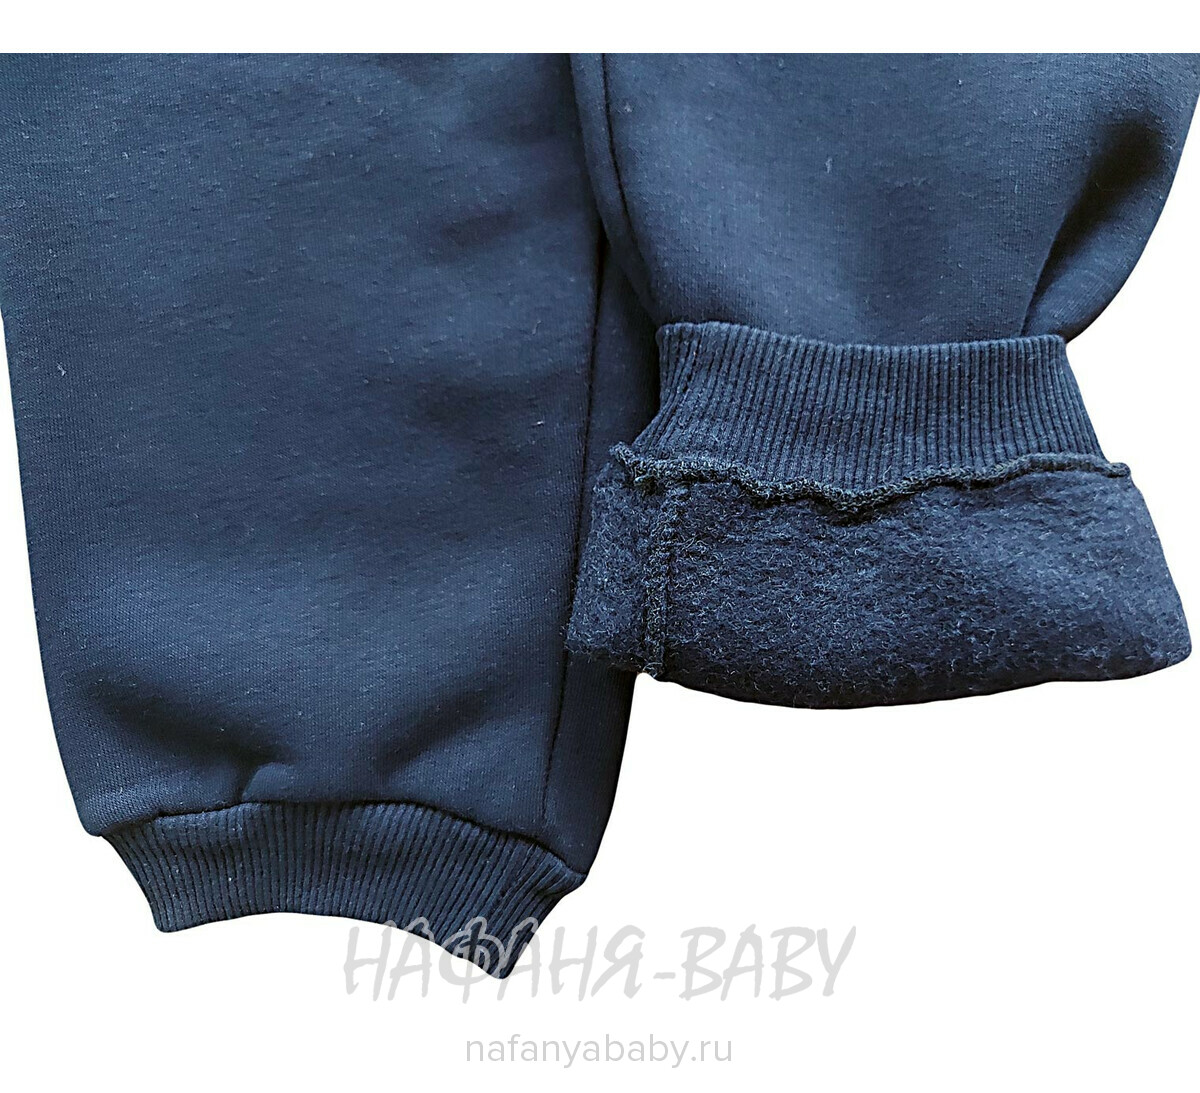 Теплые брюки с начесом MISIL арт: 3636 9-12, 5-9 лет, 10-15 лет, цвет темно-синий, оптом Турция